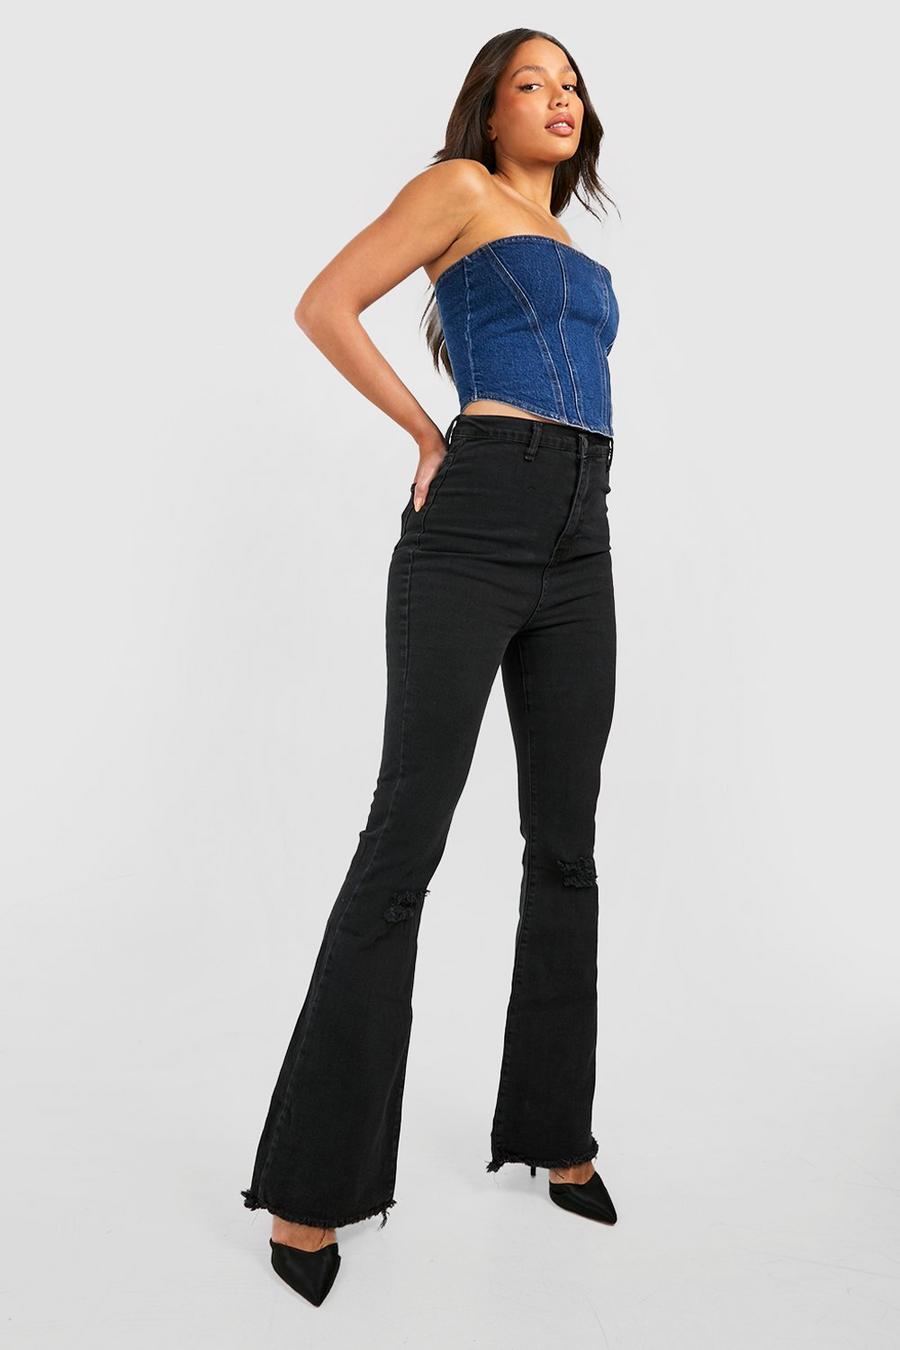 שחור black מכנסי ג'ינס High Waisted מתרחבים מבד נמתח עם קרעים לנשים גבוהות